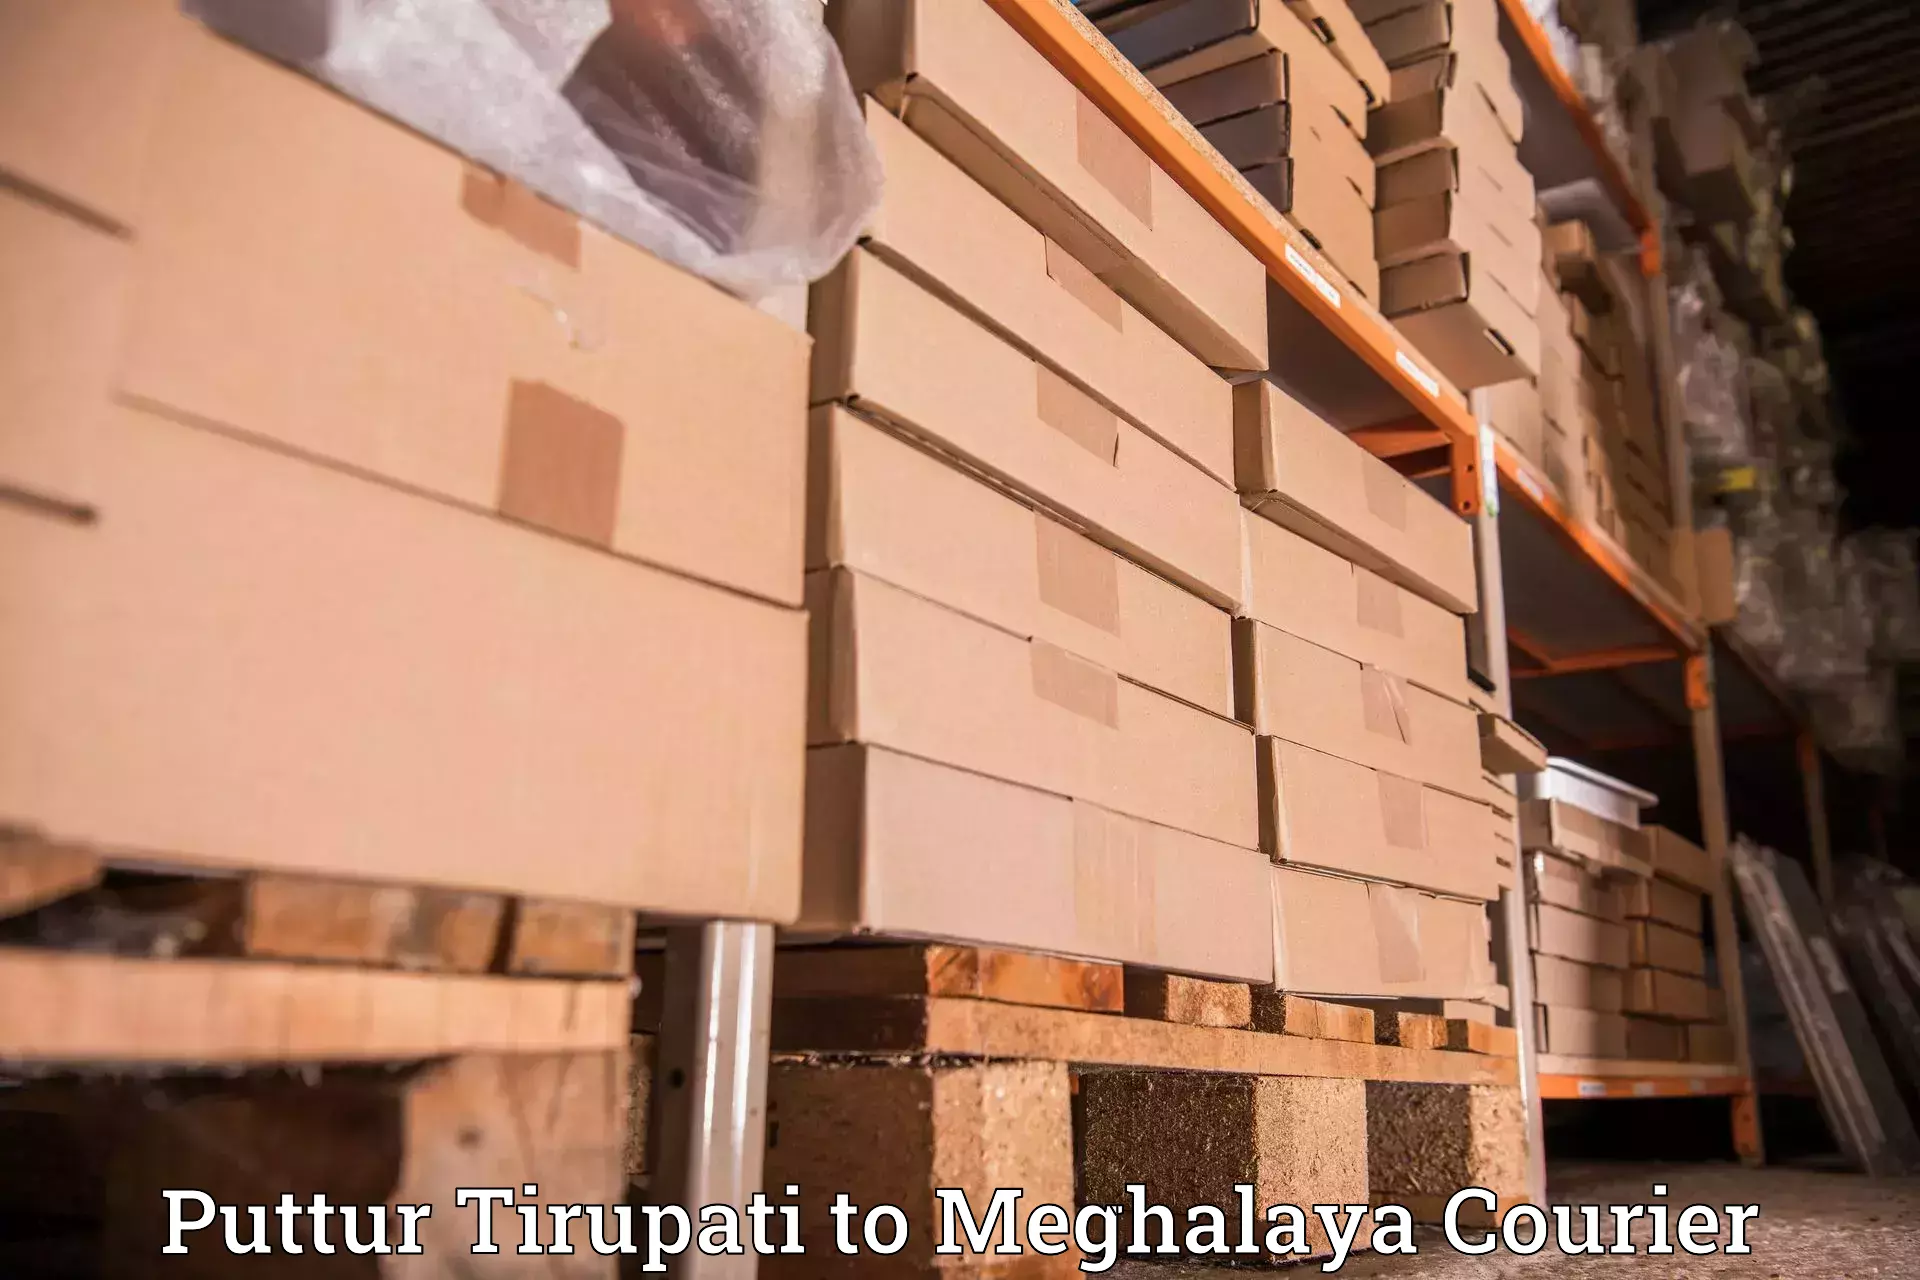 High value parcel delivery Puttur Tirupati to Umsaw